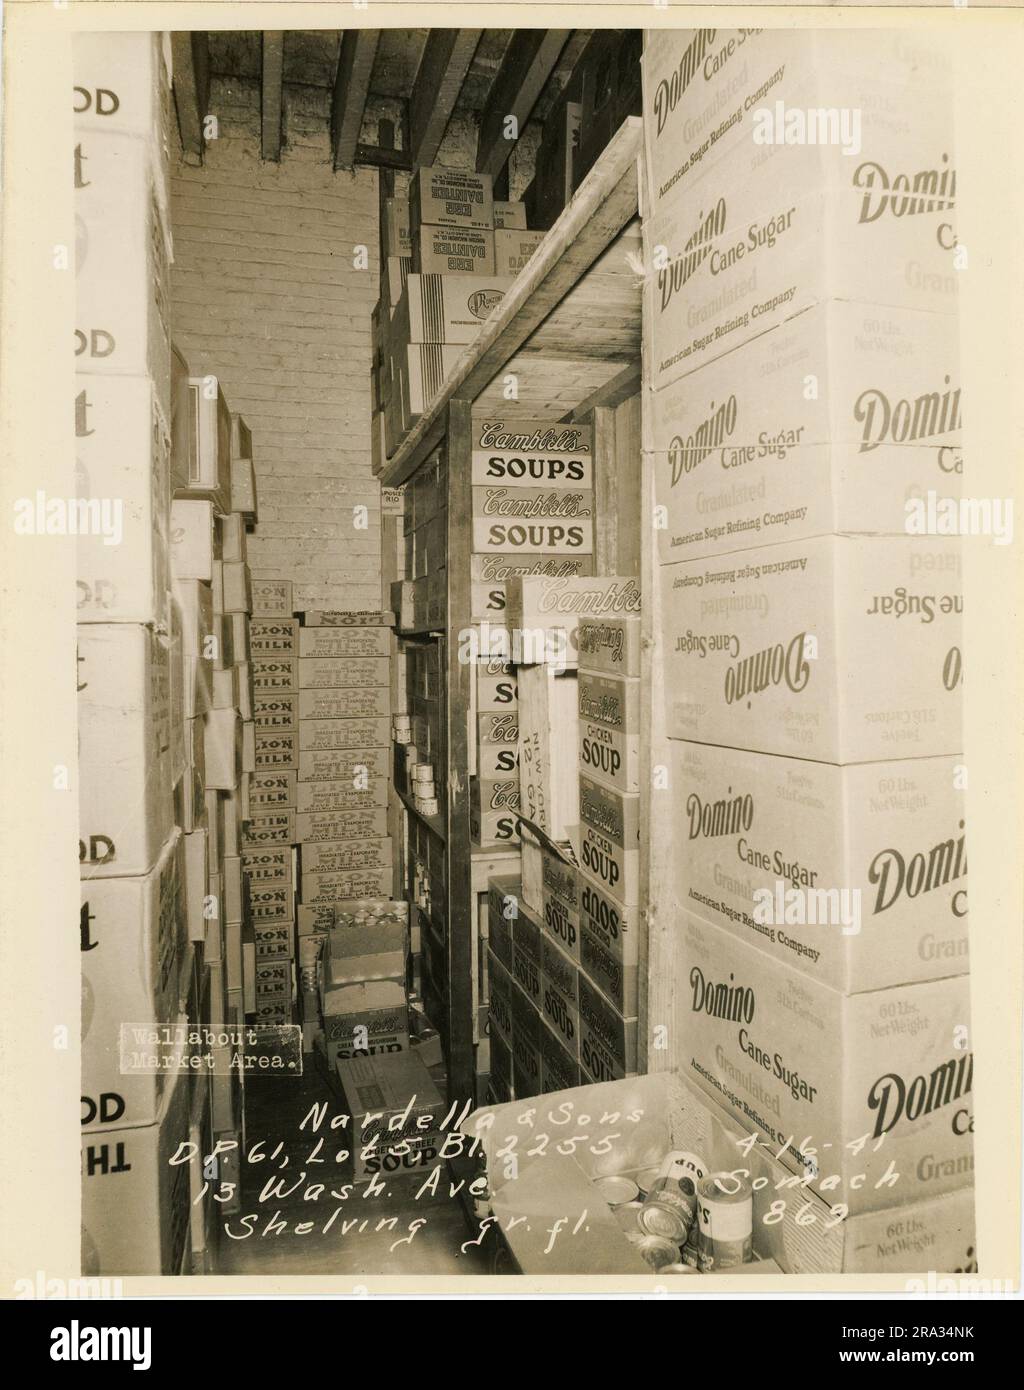 Photographie de la chambre intérieure vue sur Nardella & Sons, Lot 5, bl. 2255, 13 laver. Ave, étagères au rez-de-chaussée avec signalisation de Campbell soupes et Domino Cane Sugar. Banque D'Images